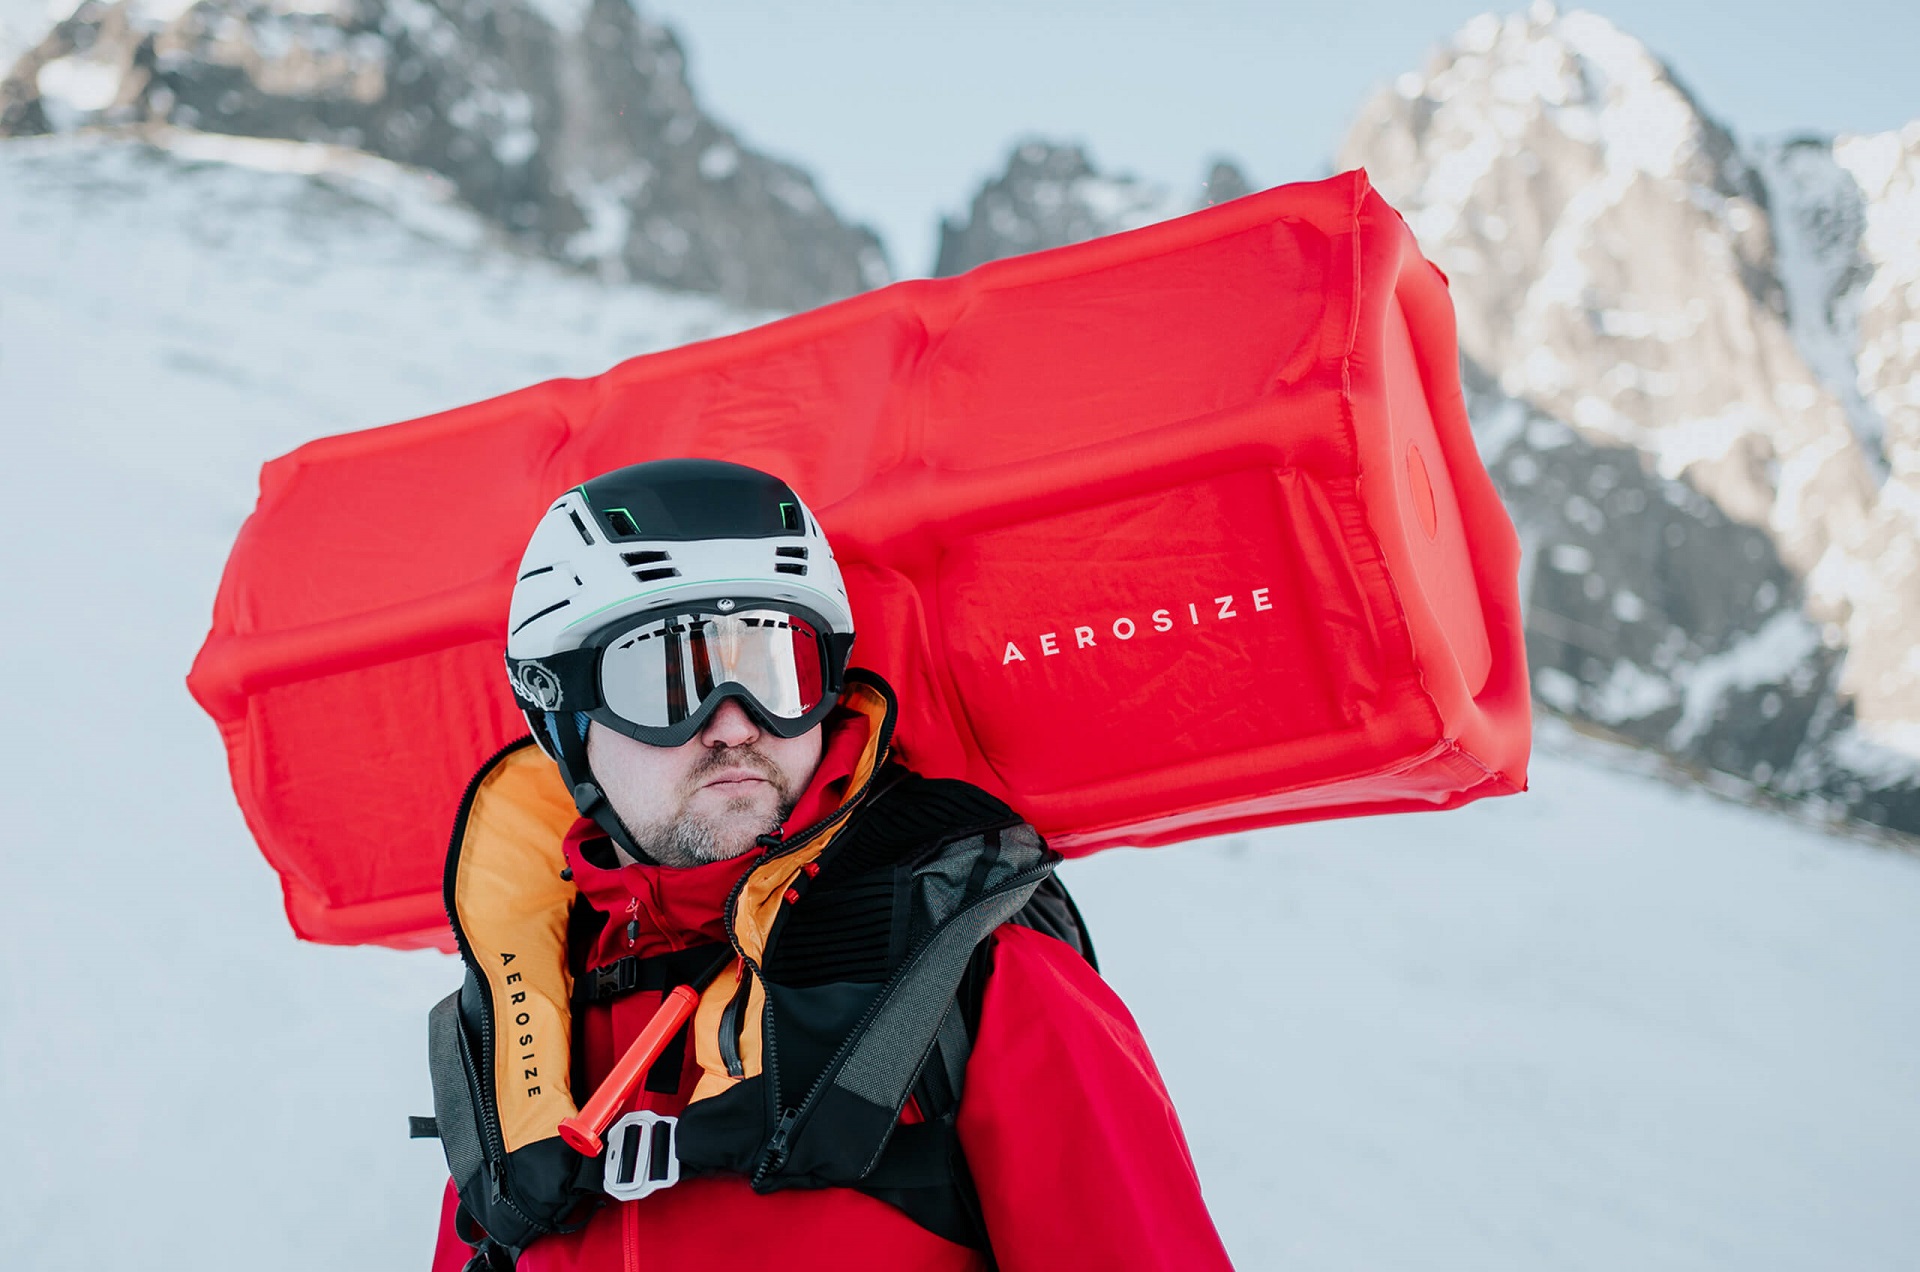 Członek zespołu Maciej Roth w uruchomionej poduszce lawinowej AEROSIZE, zimą, w górach